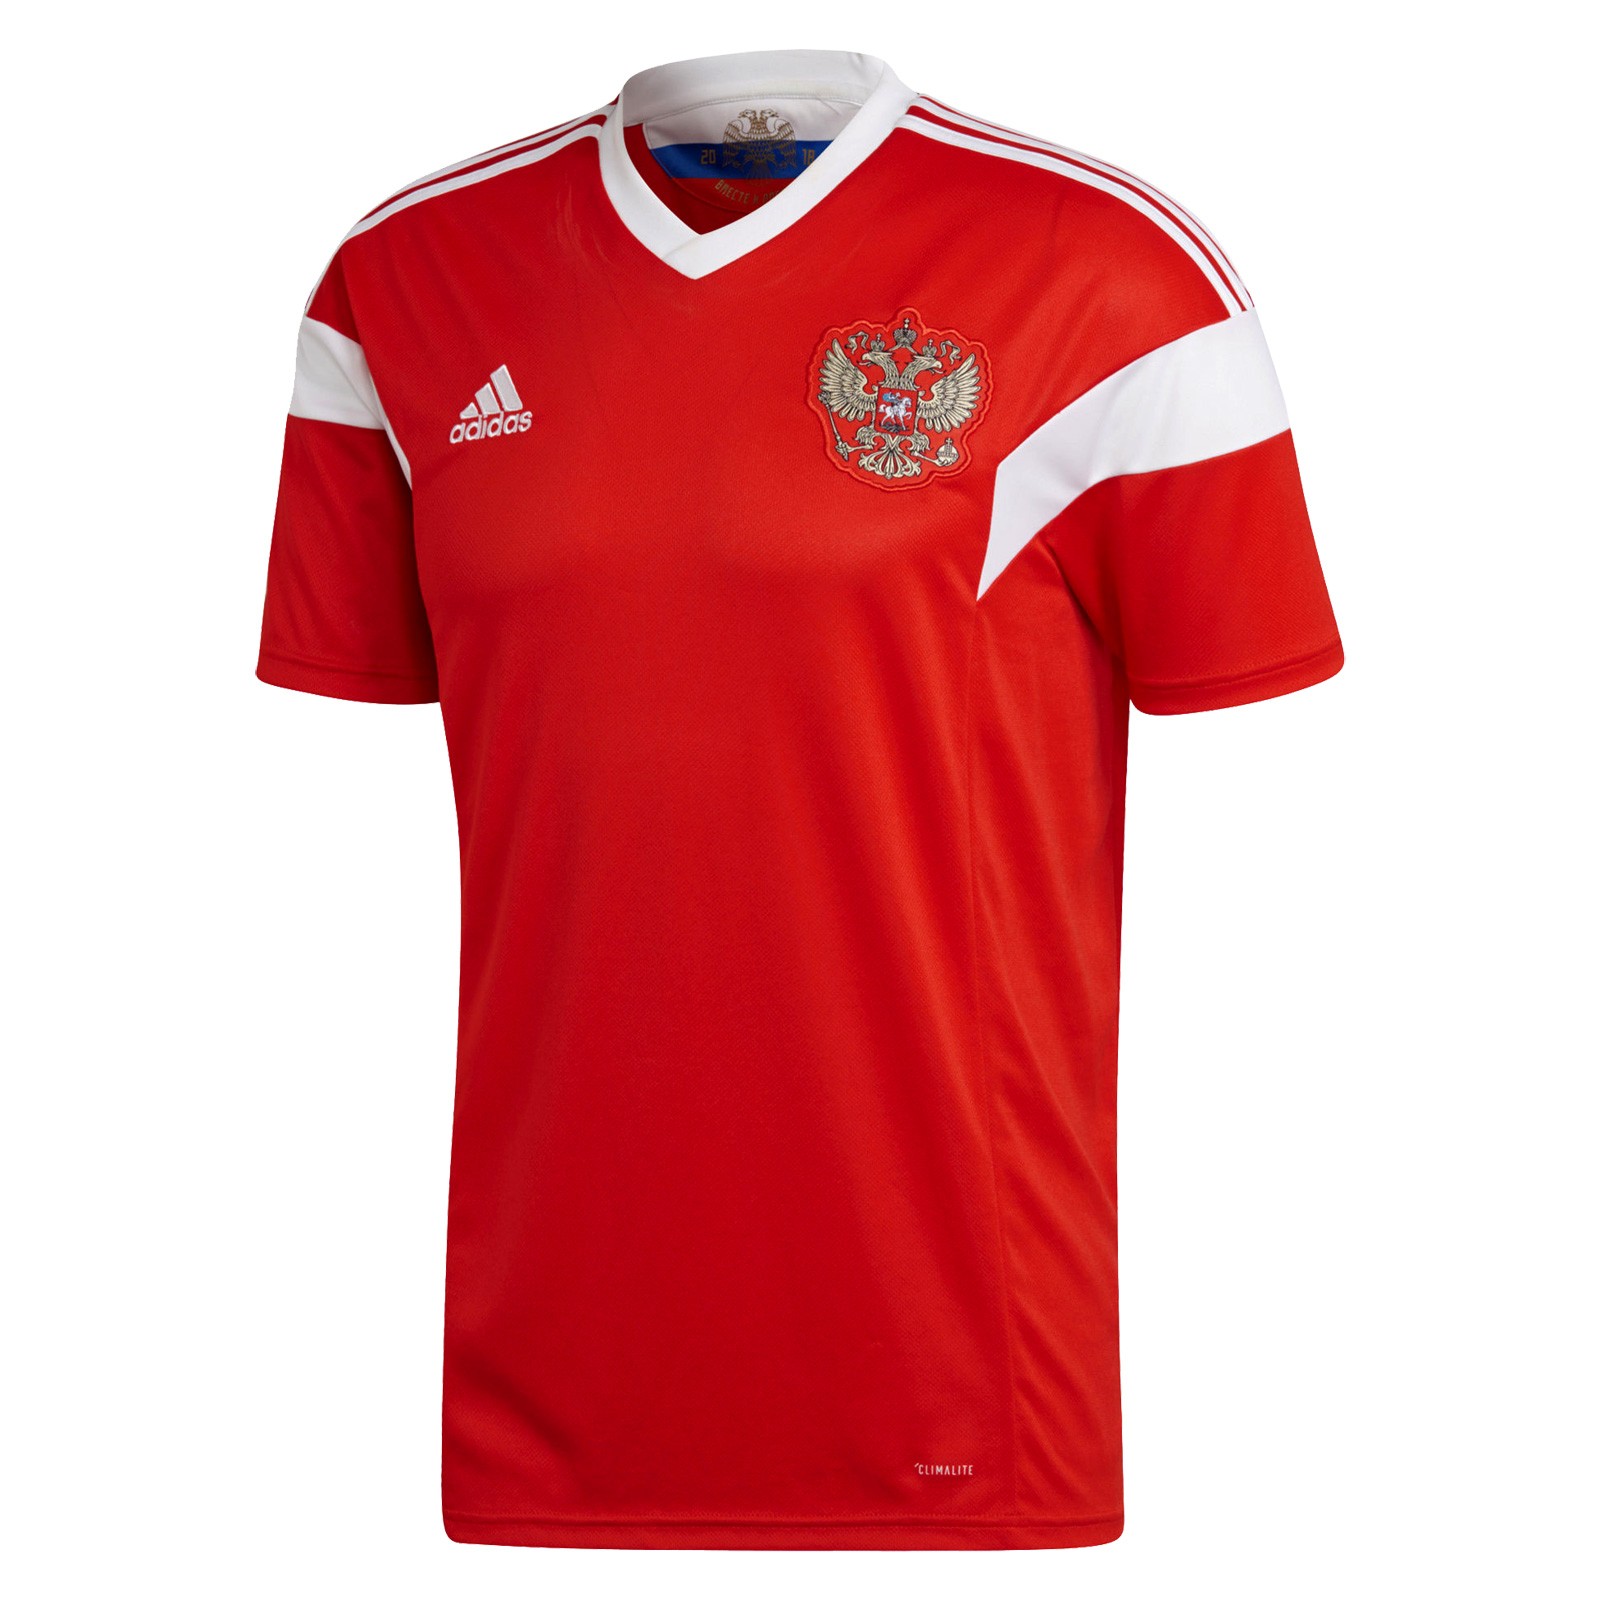 俄罗斯国家队2018世界杯球迷版主场球衣